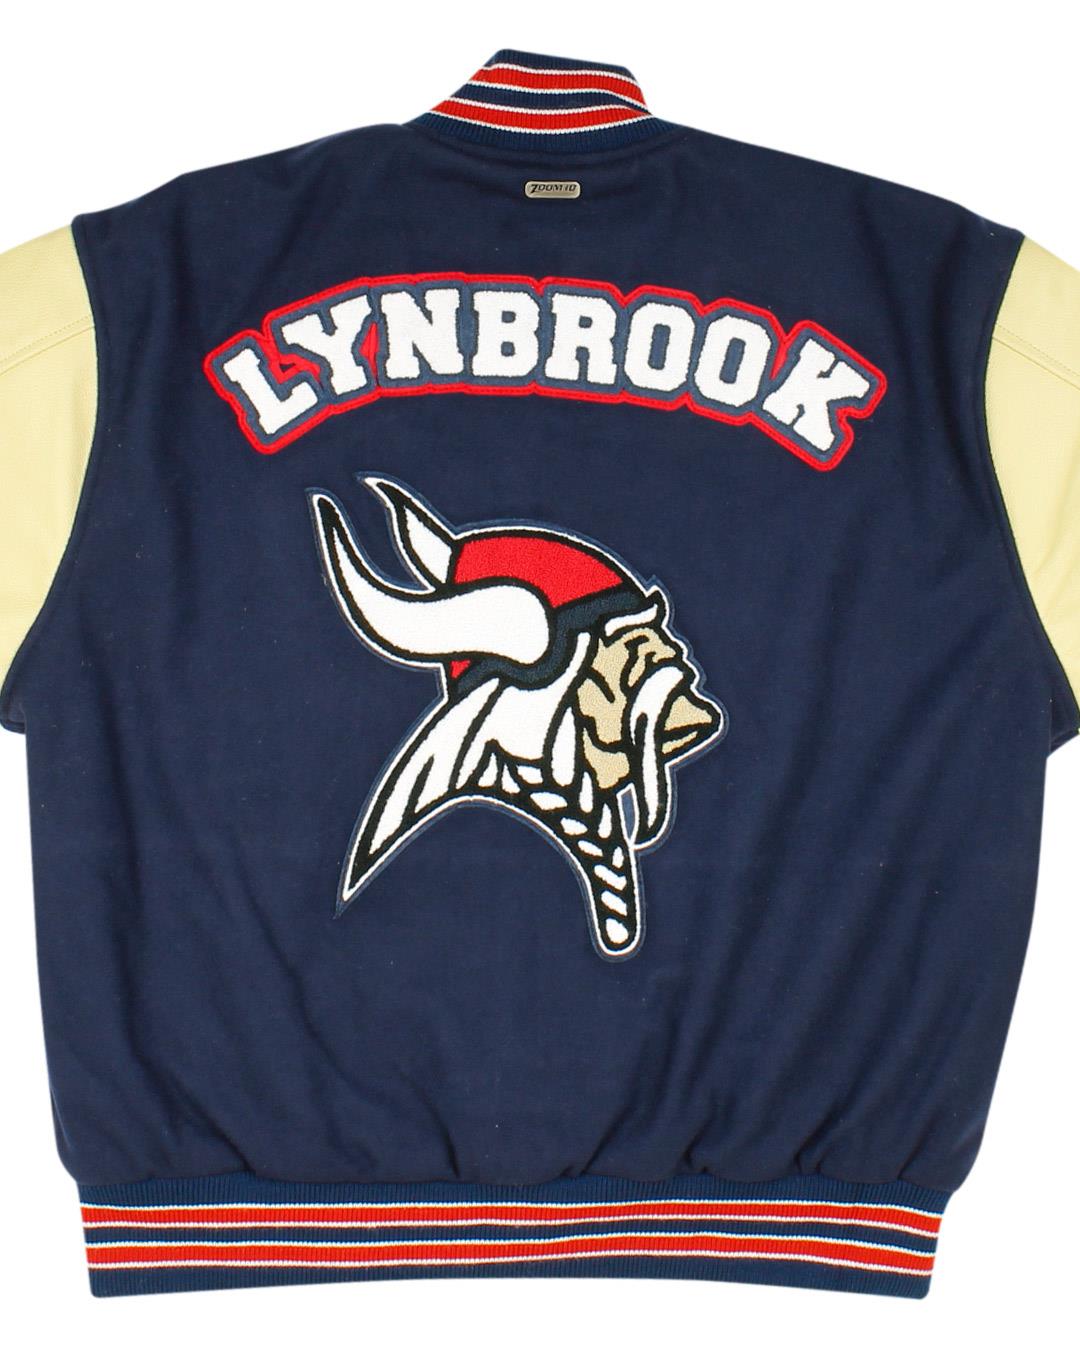 Lynbrook High School Letterman Jacket, San Jose CA - Back